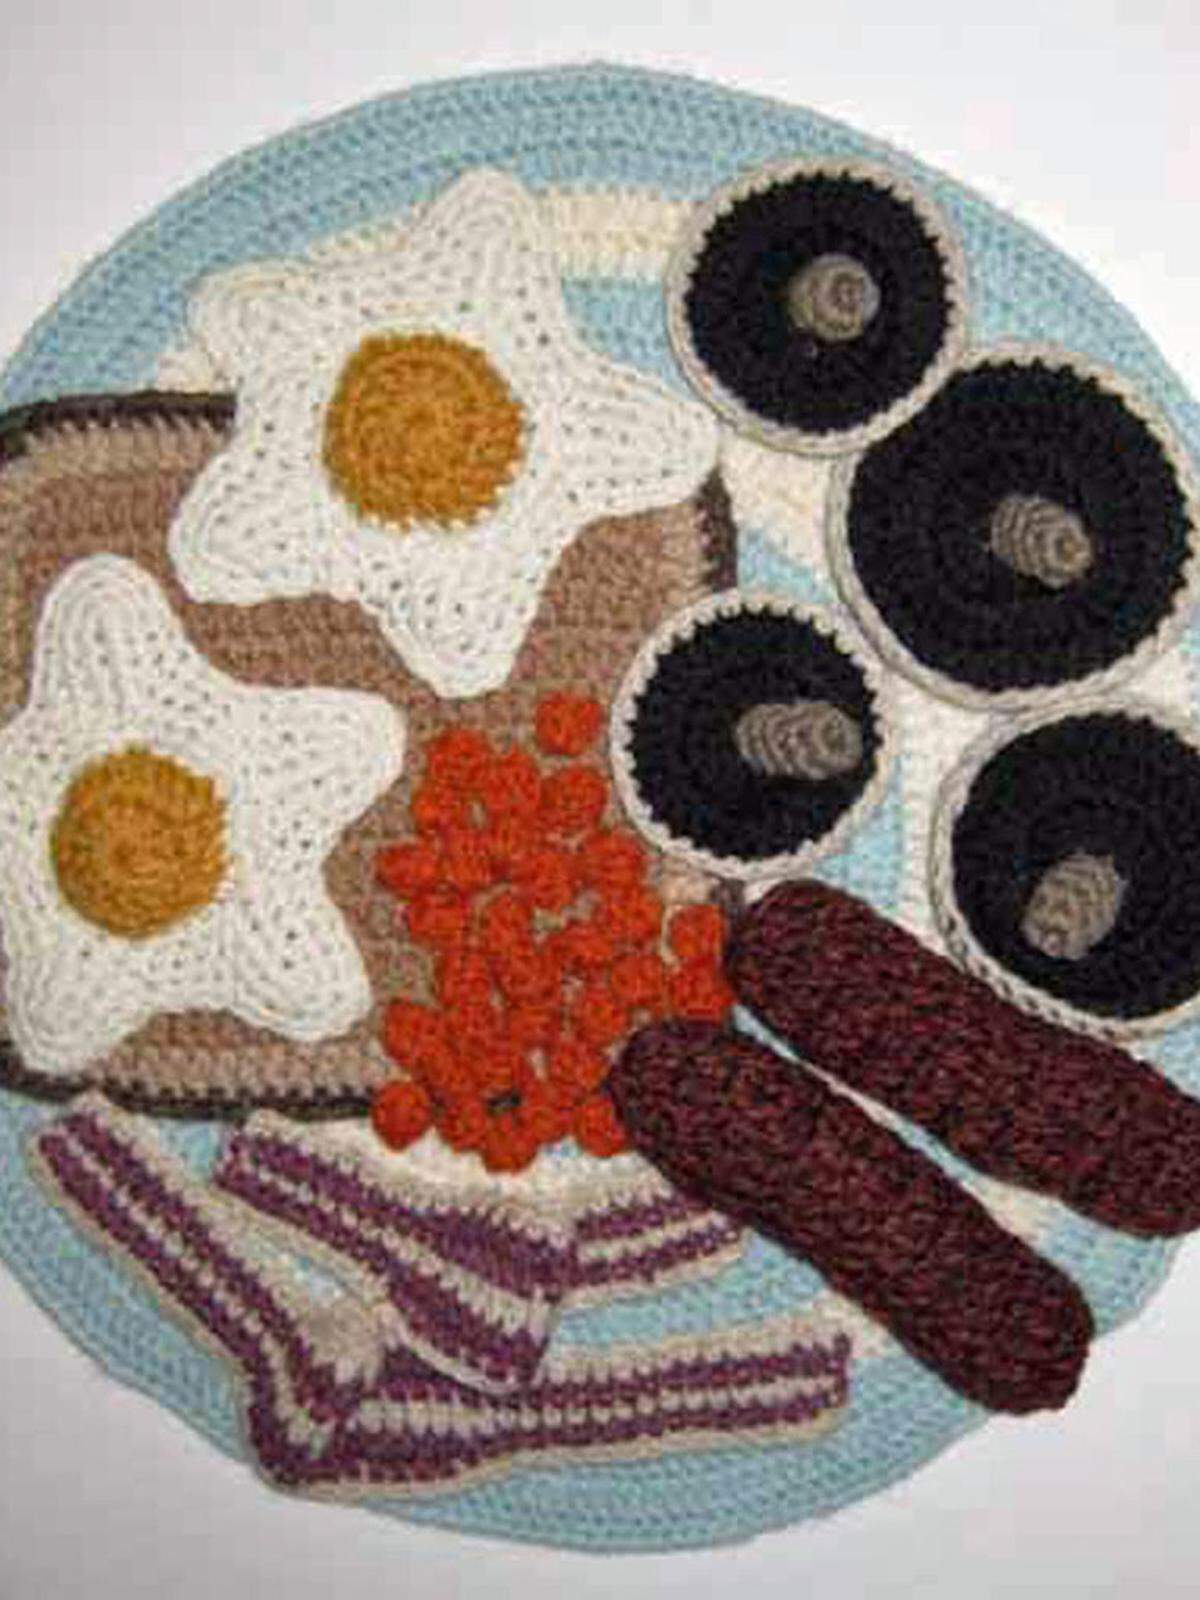 Die britische Künstlerin bereitet maschenweise Snacks zu: Garnelentoast mit Gurke, runde Cracker mit Schinken, Oliven und Ei, süße Obsttörtchen oder „Sewshi“. Gegen Kater hält sie ein deftiges englisches Frühstück bereit, mit gegrillten Champignons, Wurst, Eiern und Bohnen, für Luxusgeschöpfe fertigt sie Kaviardosen.  Gehäkelte Wolle, 2008, 33,5 x 33,5 cm.